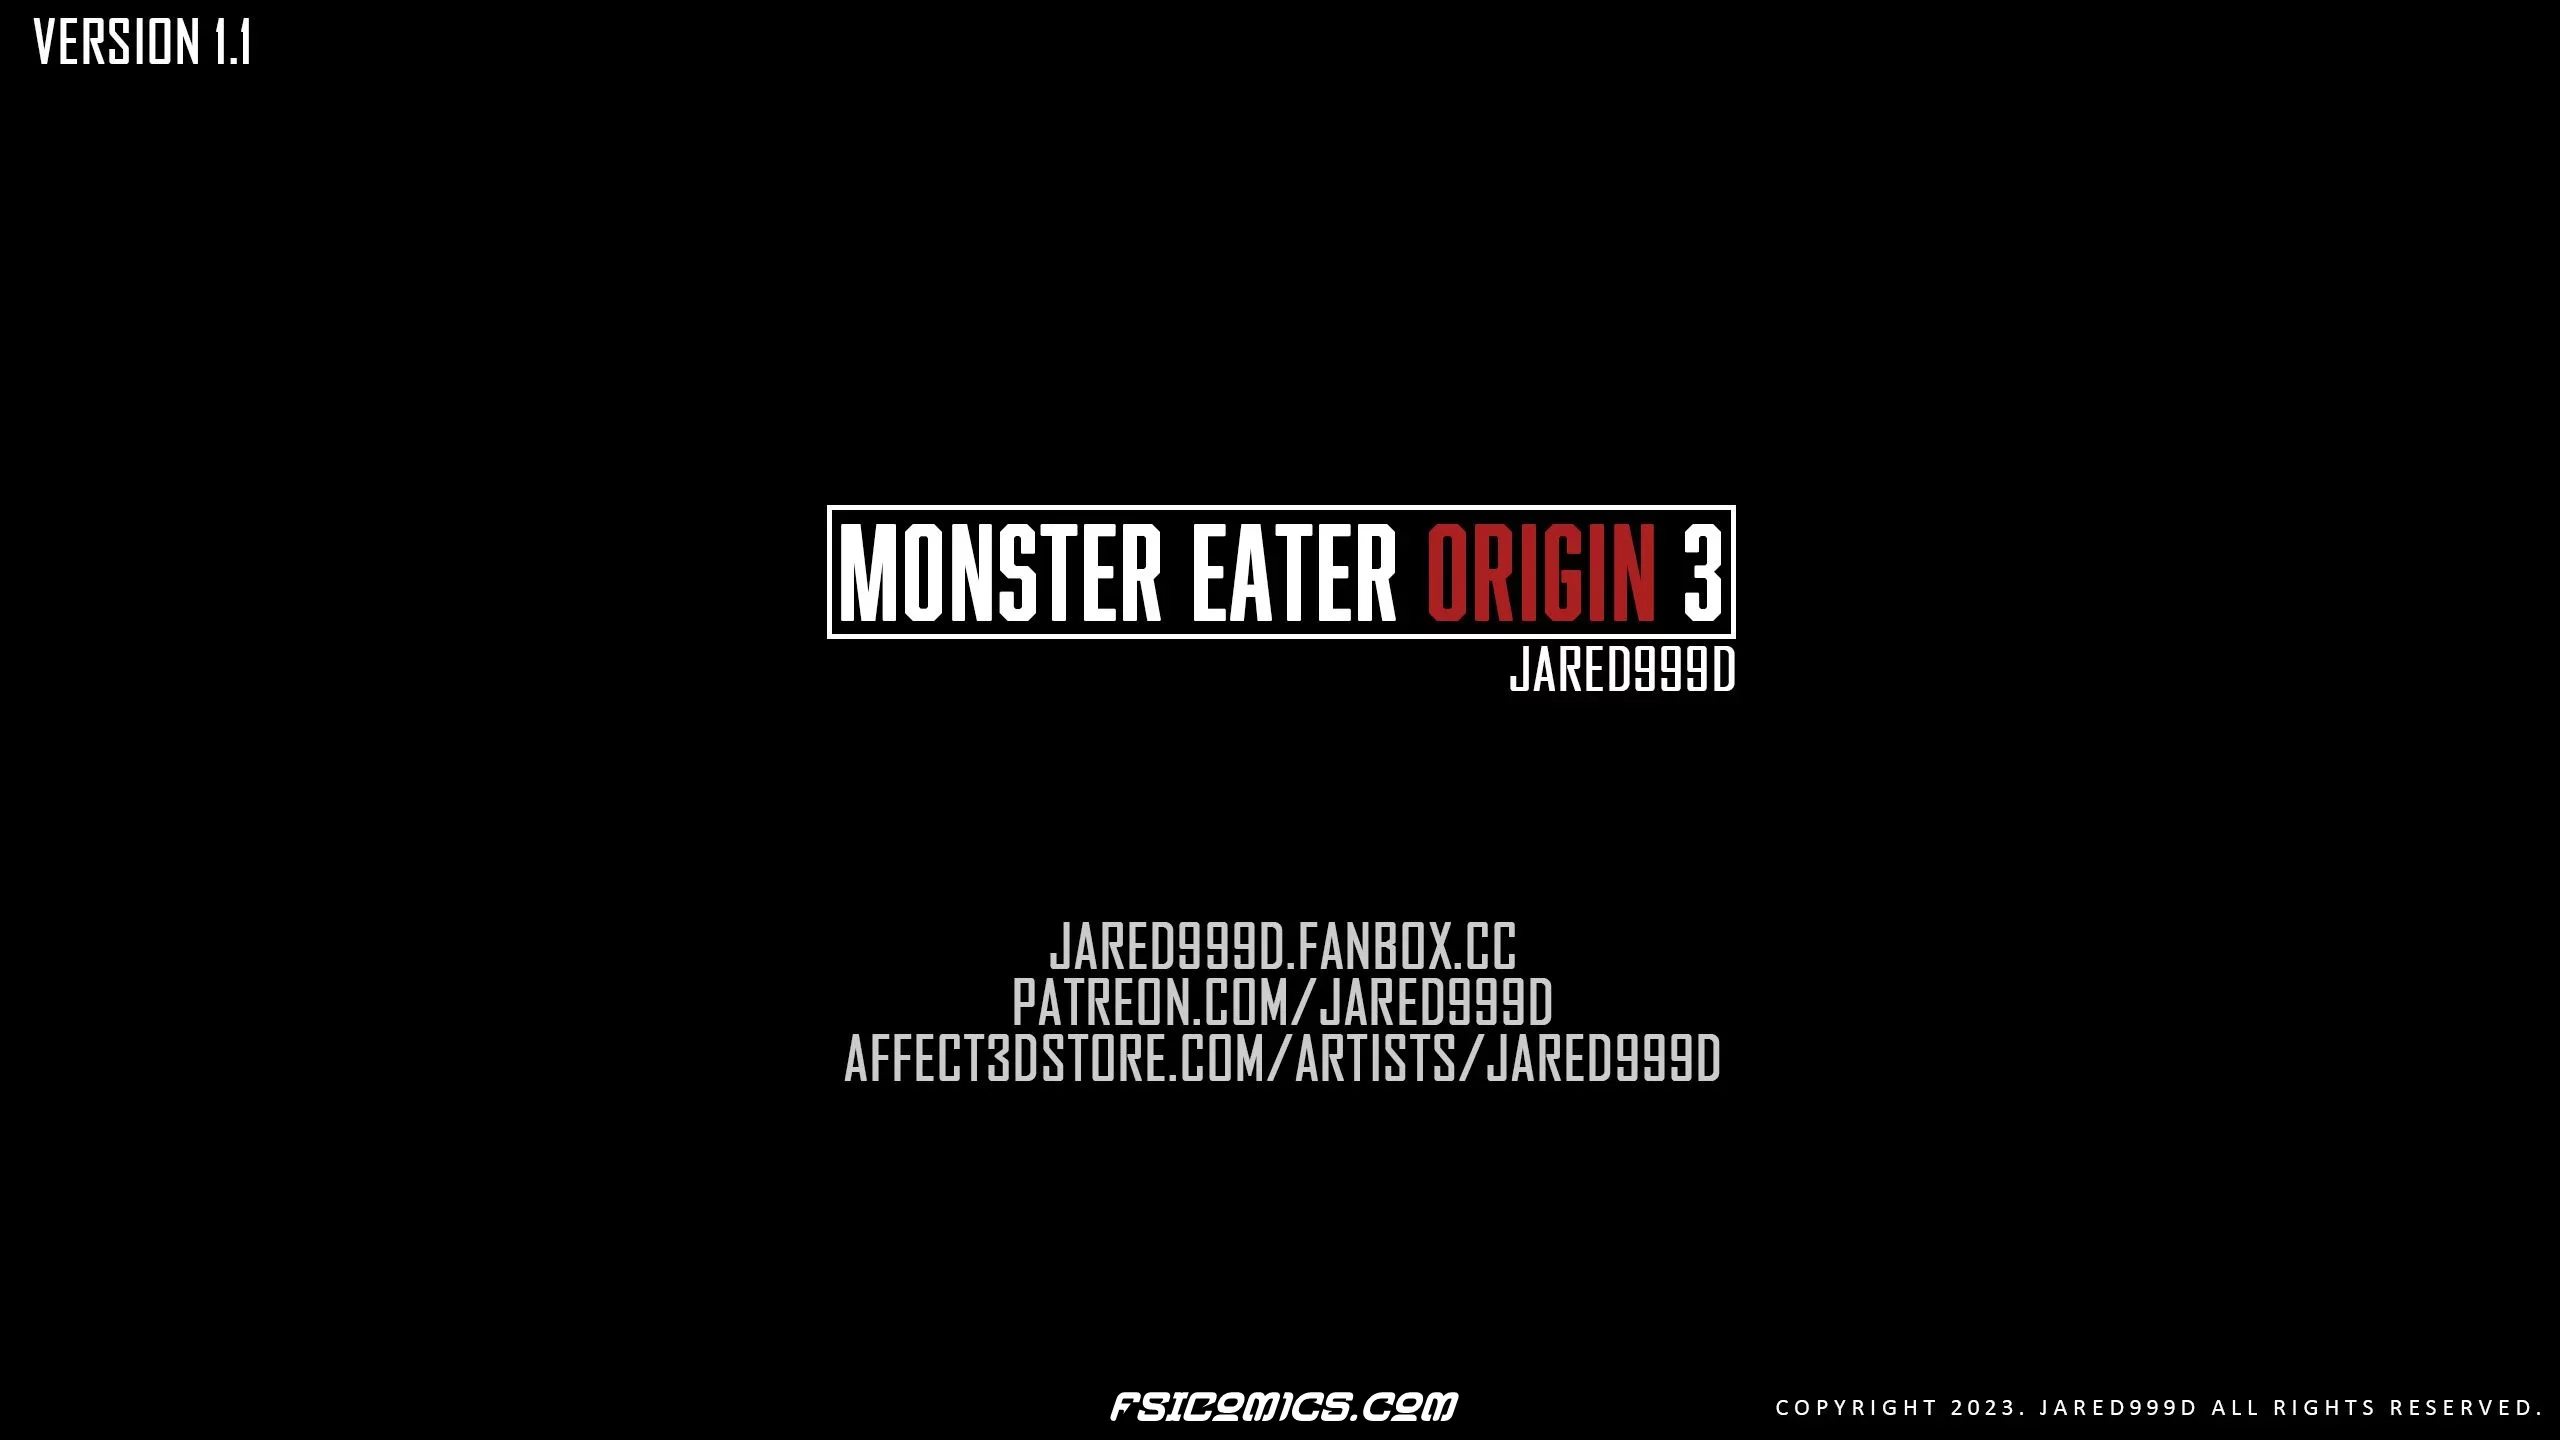 Monster Eater Origins Chapter 3 - Jared999D - 15 - FSIComics